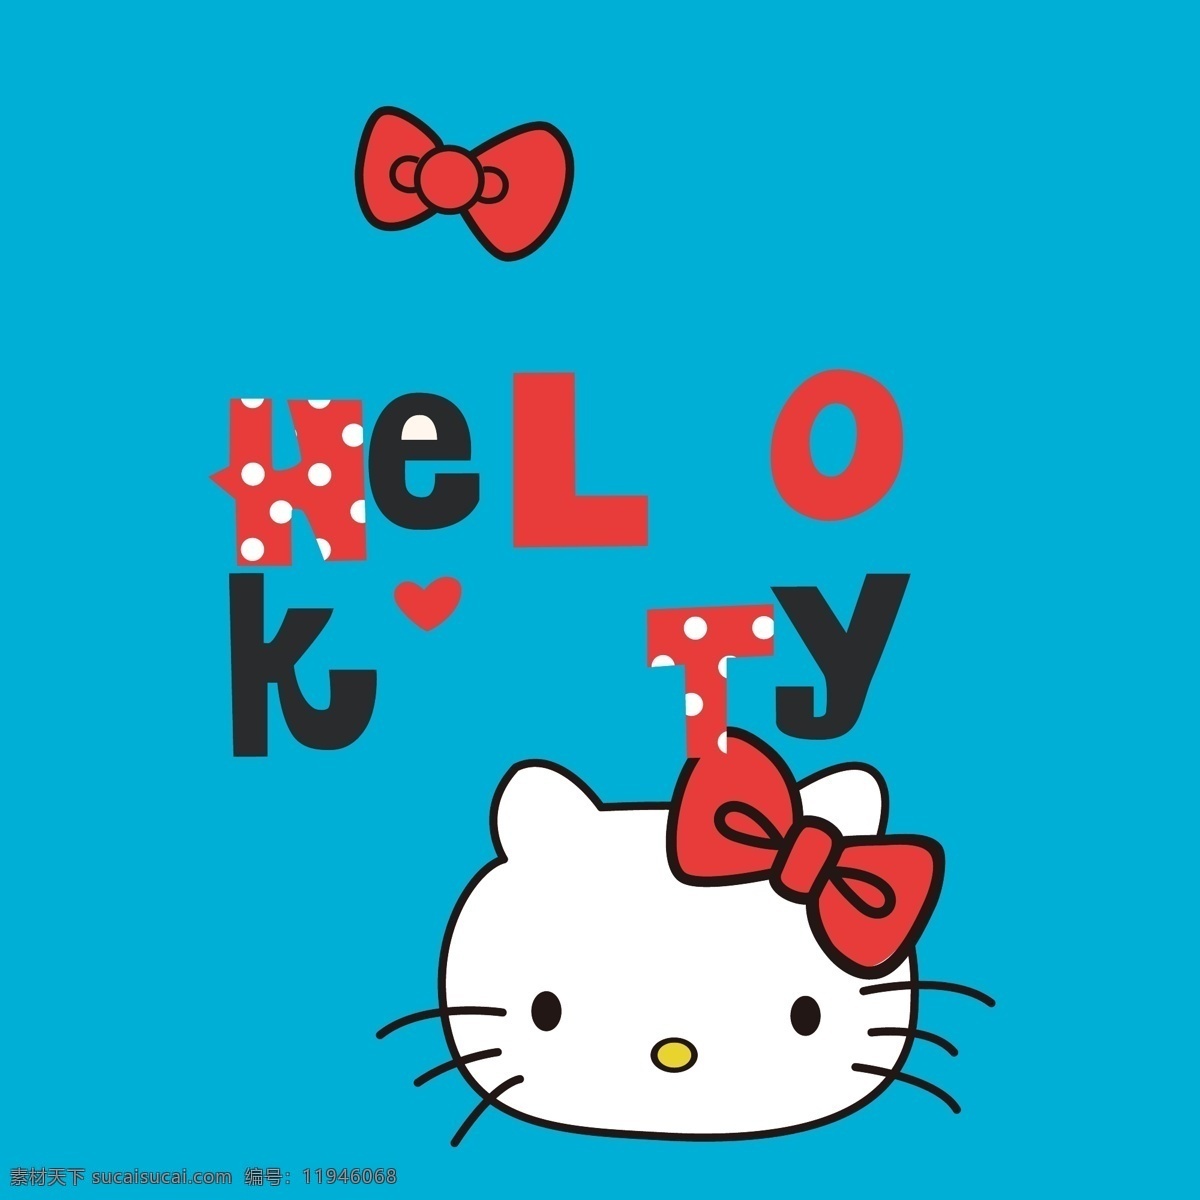 印花 矢量图 hello kt猫 服装图案 卡通动物 可爱卡通 印花矢量图 面料图库 服装设计 图案花型